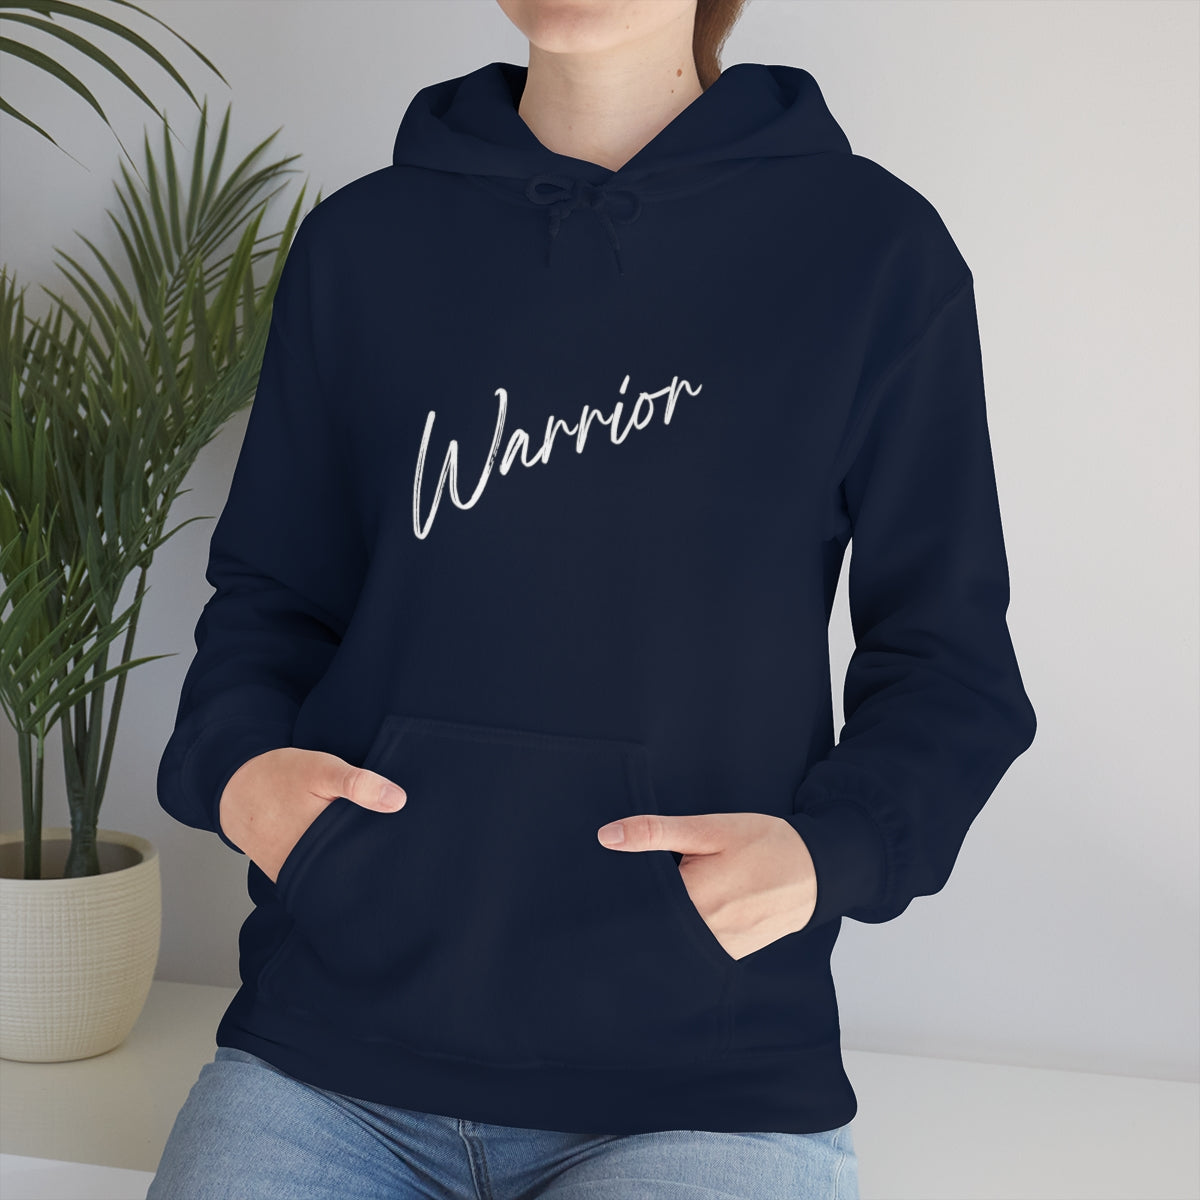 Warrior Hooded Sweatshirt